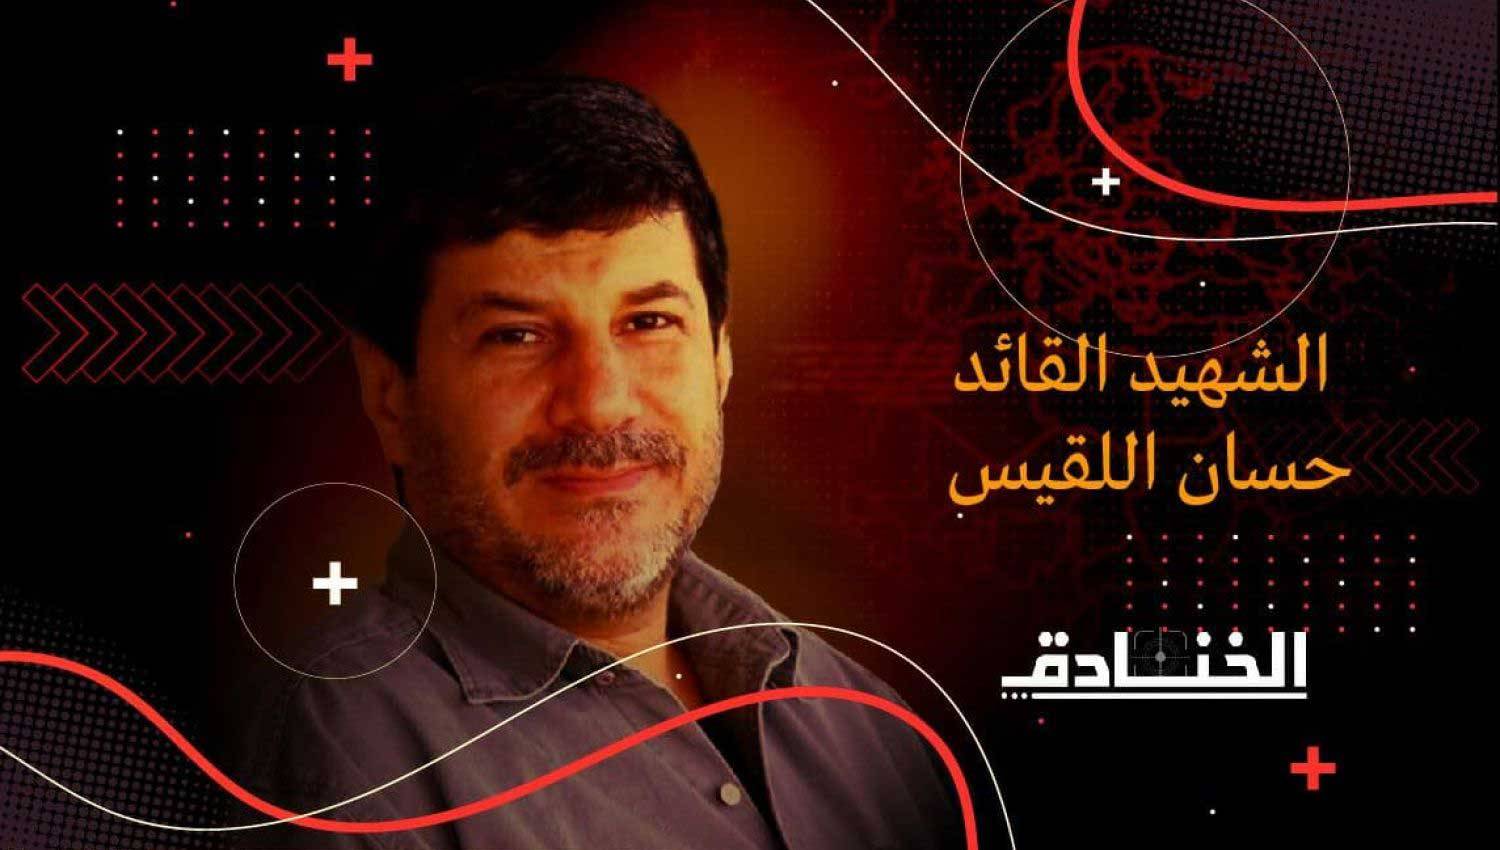 الشهيد القائد حسان اللقيس: مهندس الطائرات المسيّرة في حزب الله